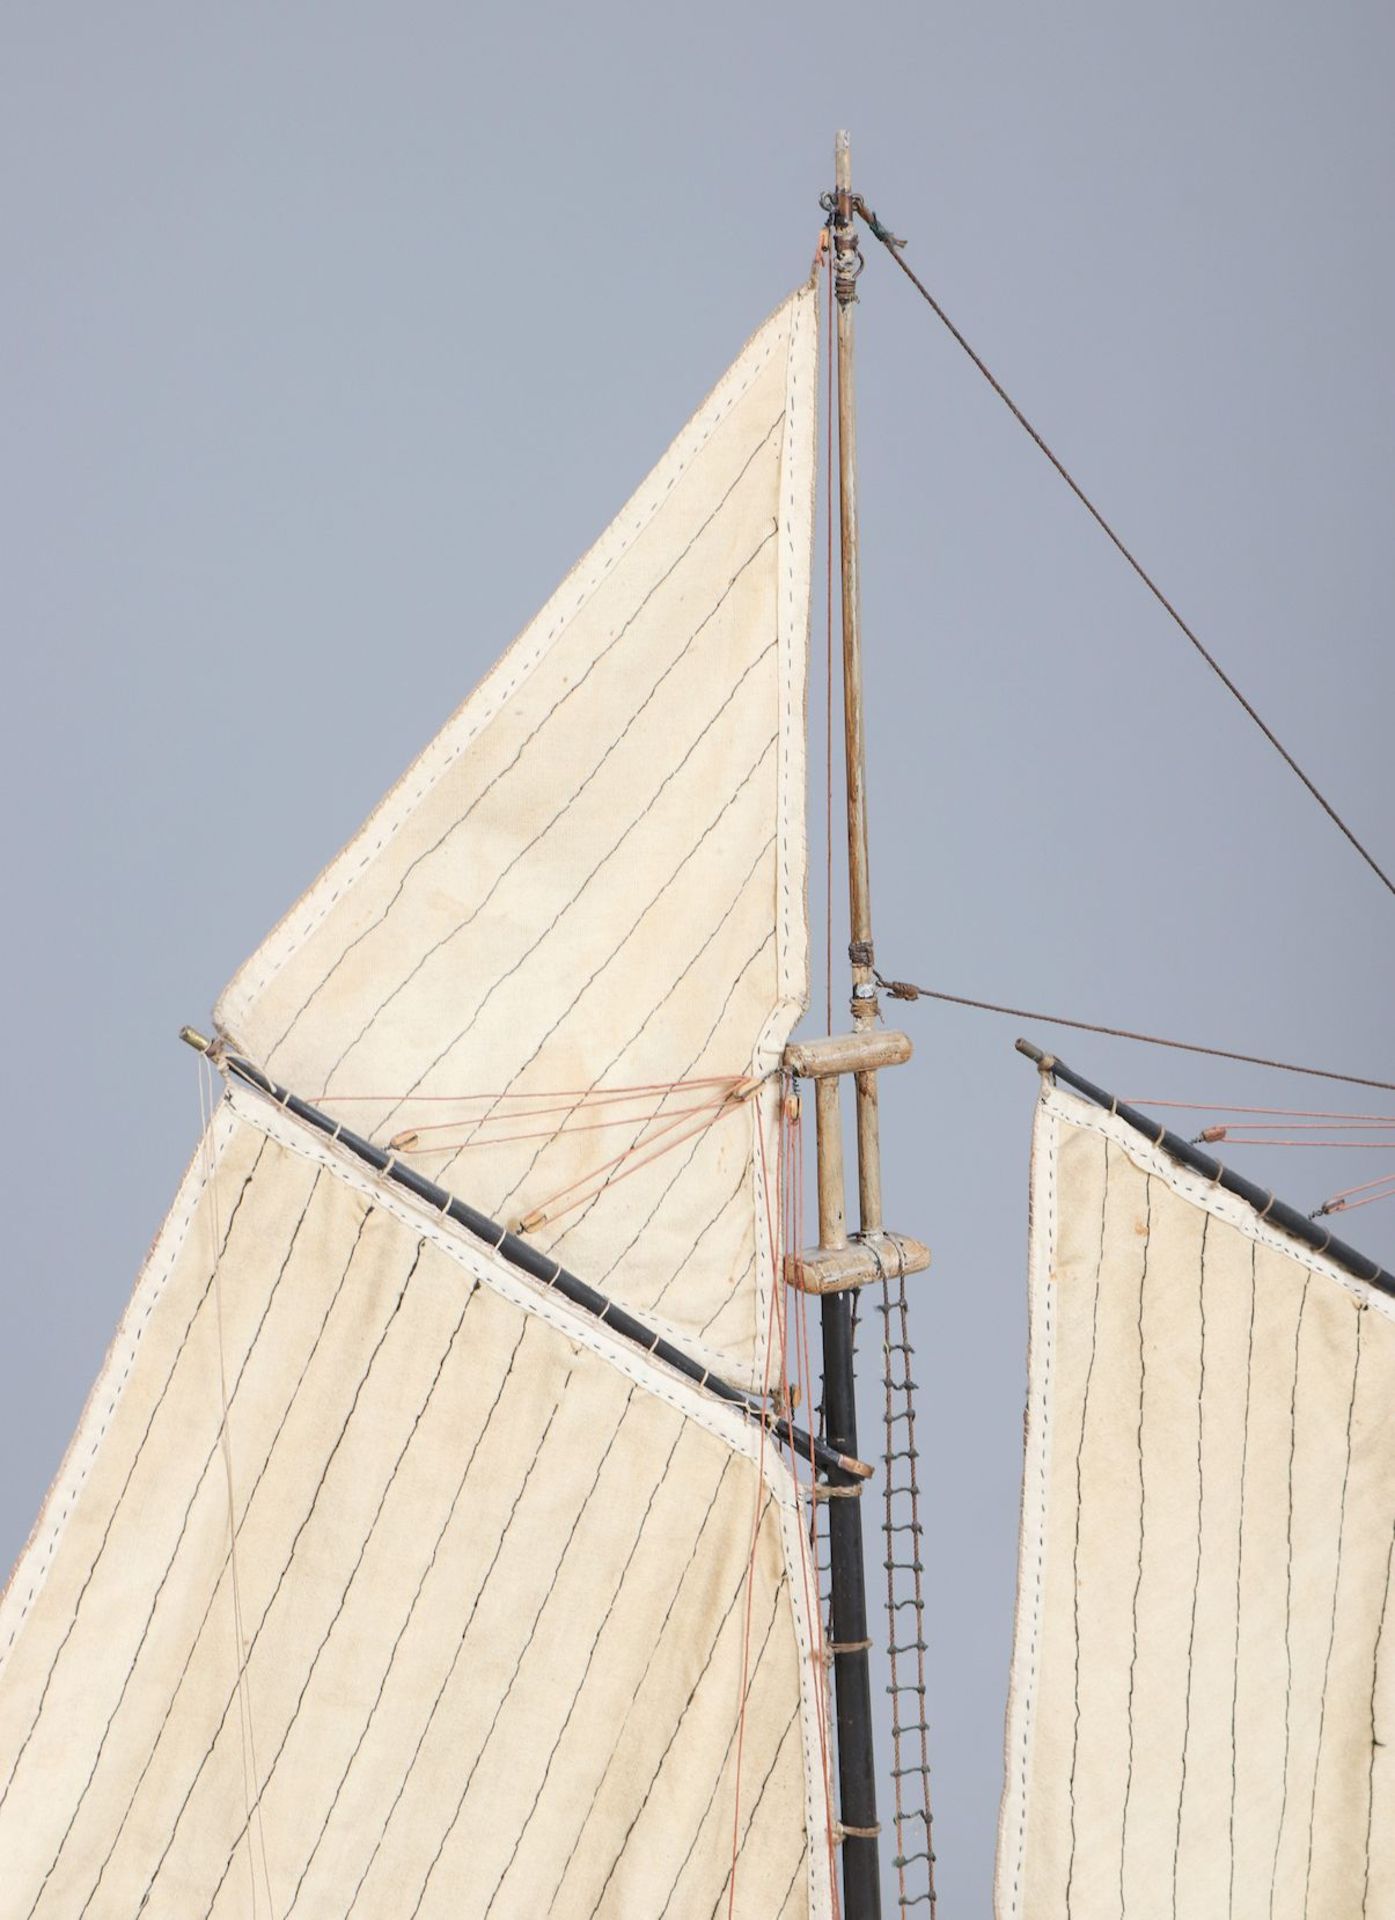 Modell eines Segelschiffs (Schoner-Yacht) ¨America¨ - Bild 4 aus 5